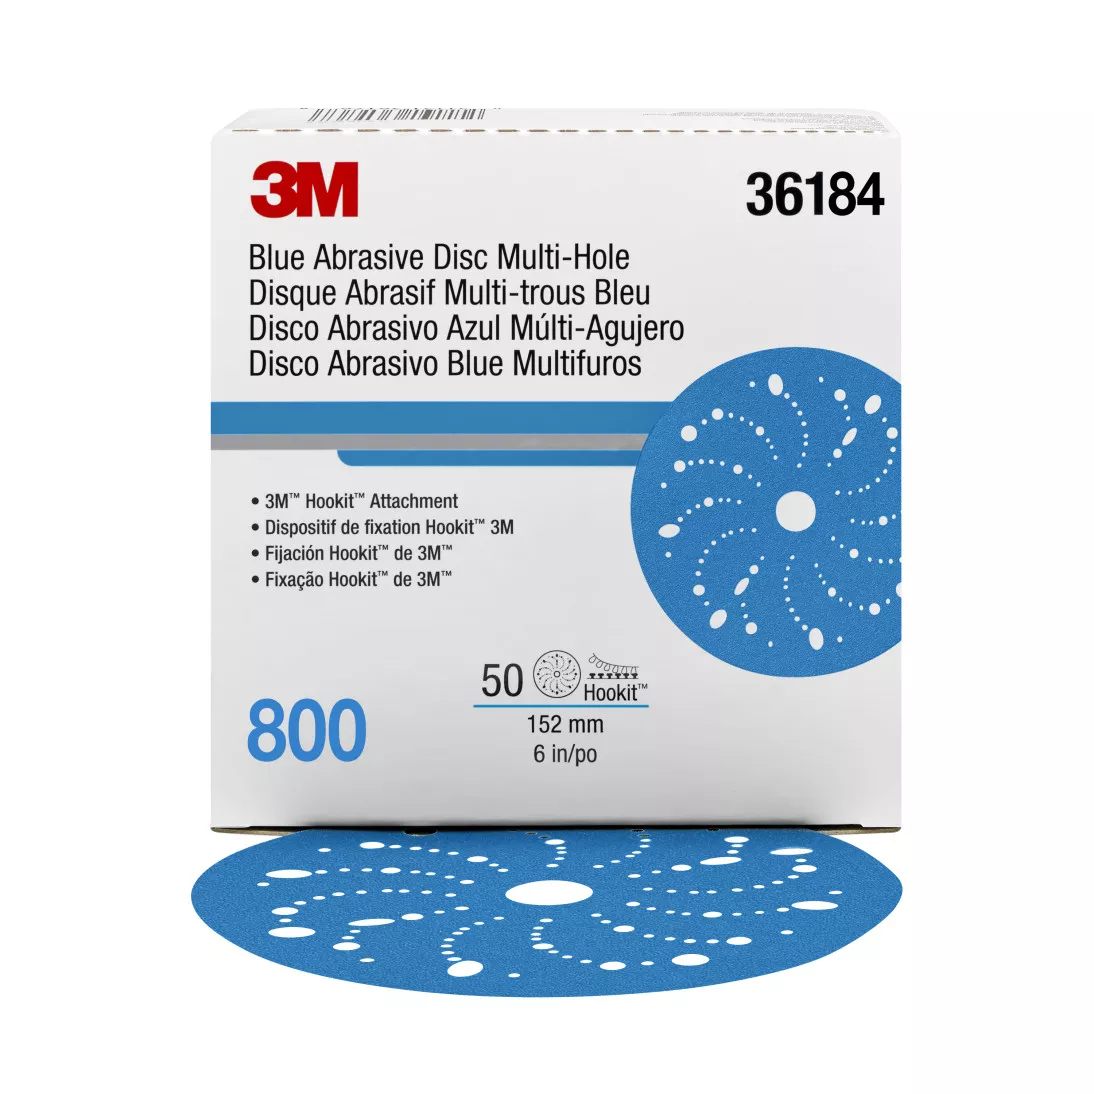 3M™ Hookit™ Blue Abrasive Disc 321U Multi-hole, 36184, 6 in, 800, 50
discs per carton, 4 cartons per case